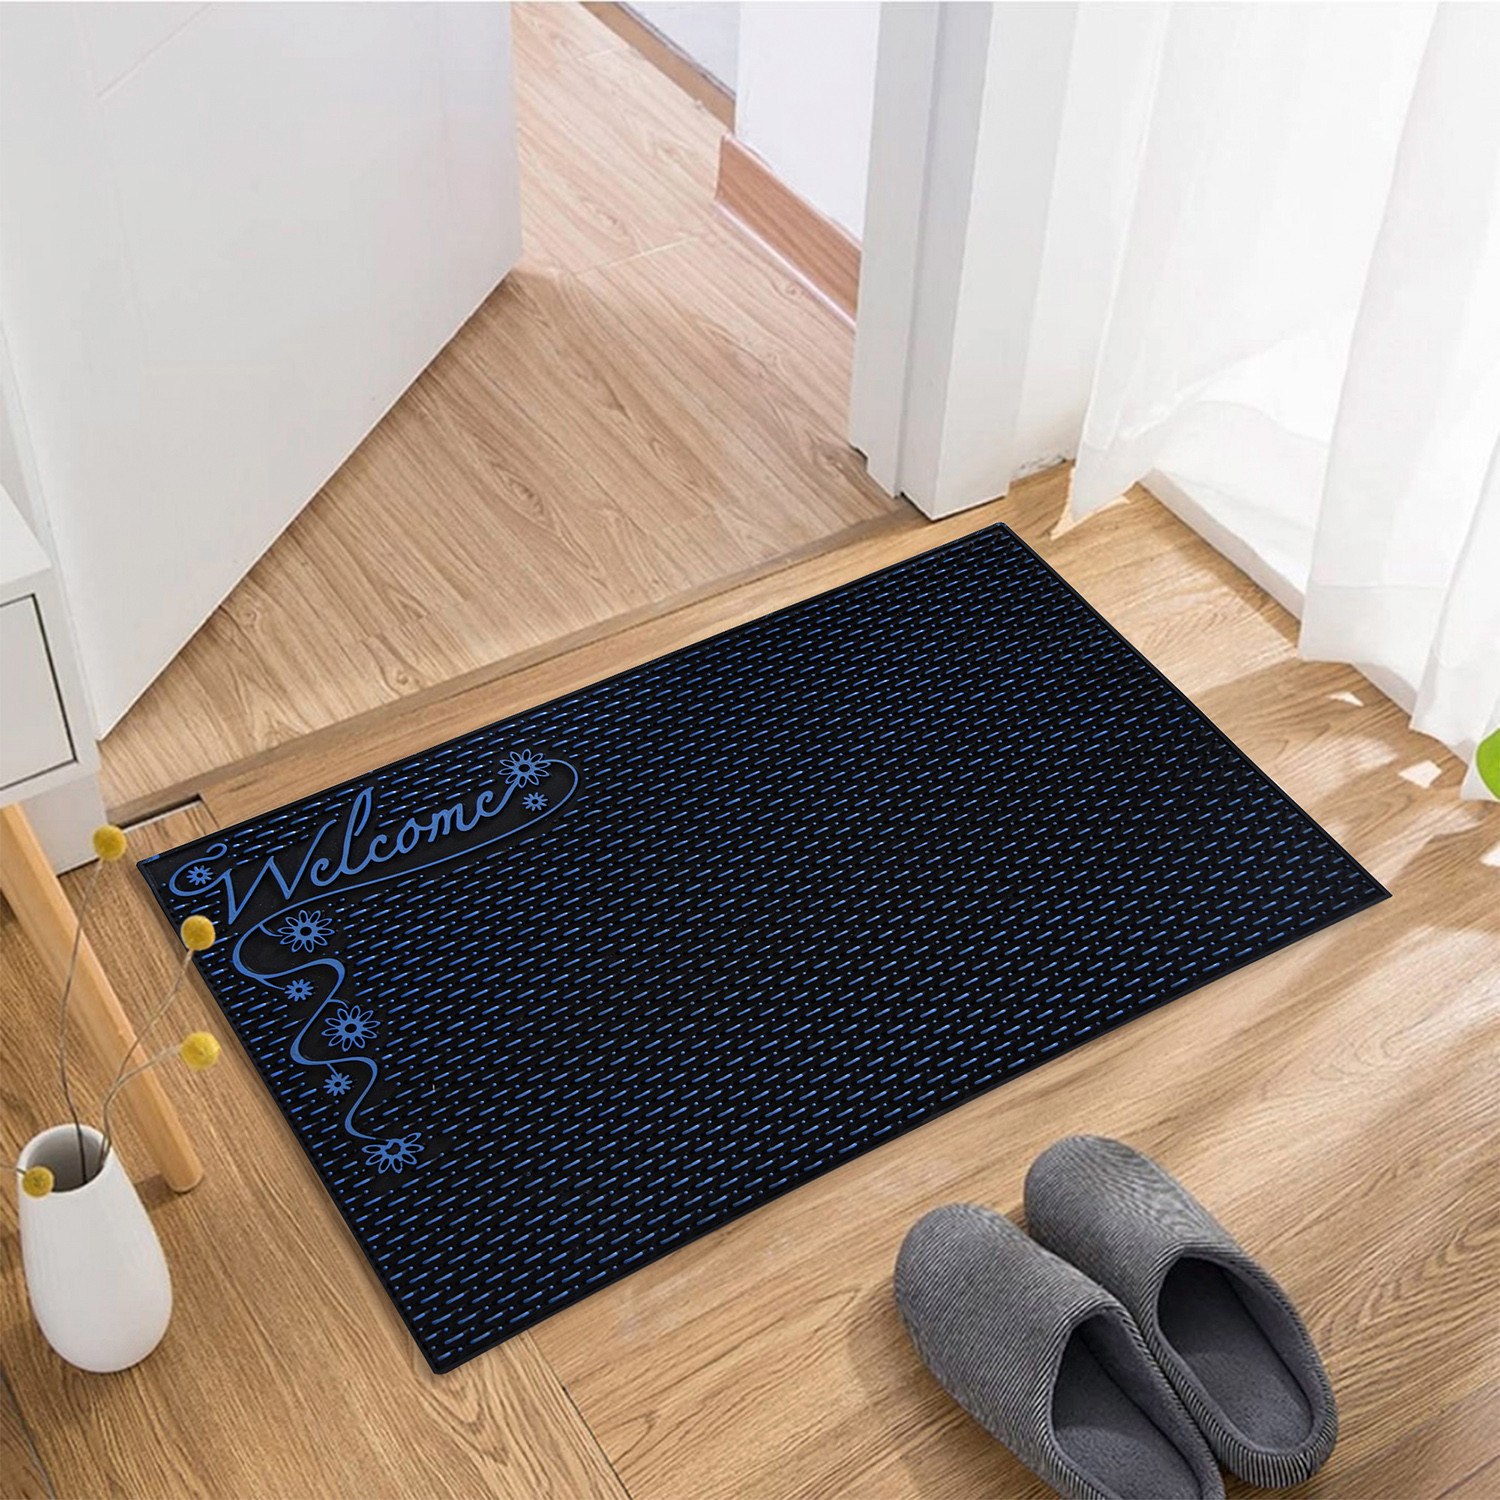 Kuber Industries Door Mat | Rubber Mud Trapper Mat | Welcome Mat | Floor mat | Door Mat for Home Entrance | Bathroom Mat | Entry Way Doormat | Black & Blue